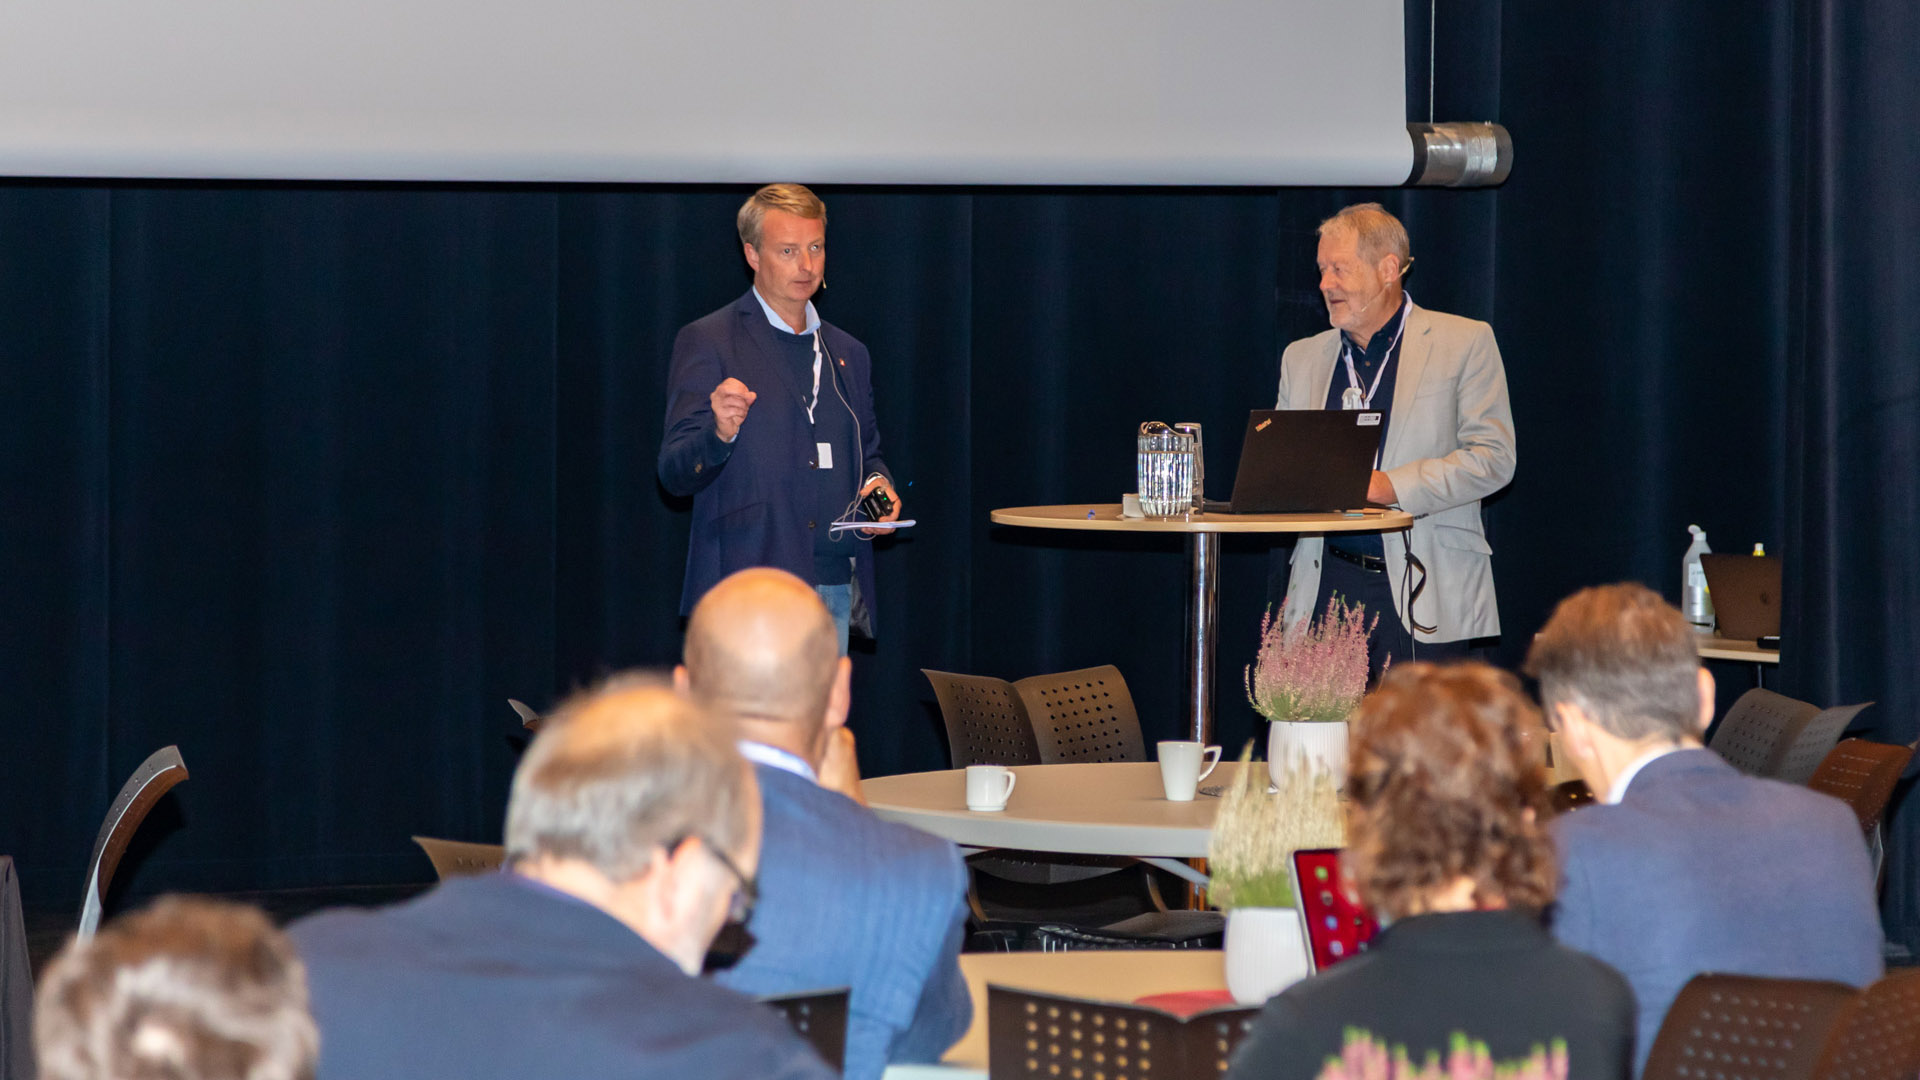 Fosenbrukonferansen 2020 - Terje Søviknes og Olav Ellevset